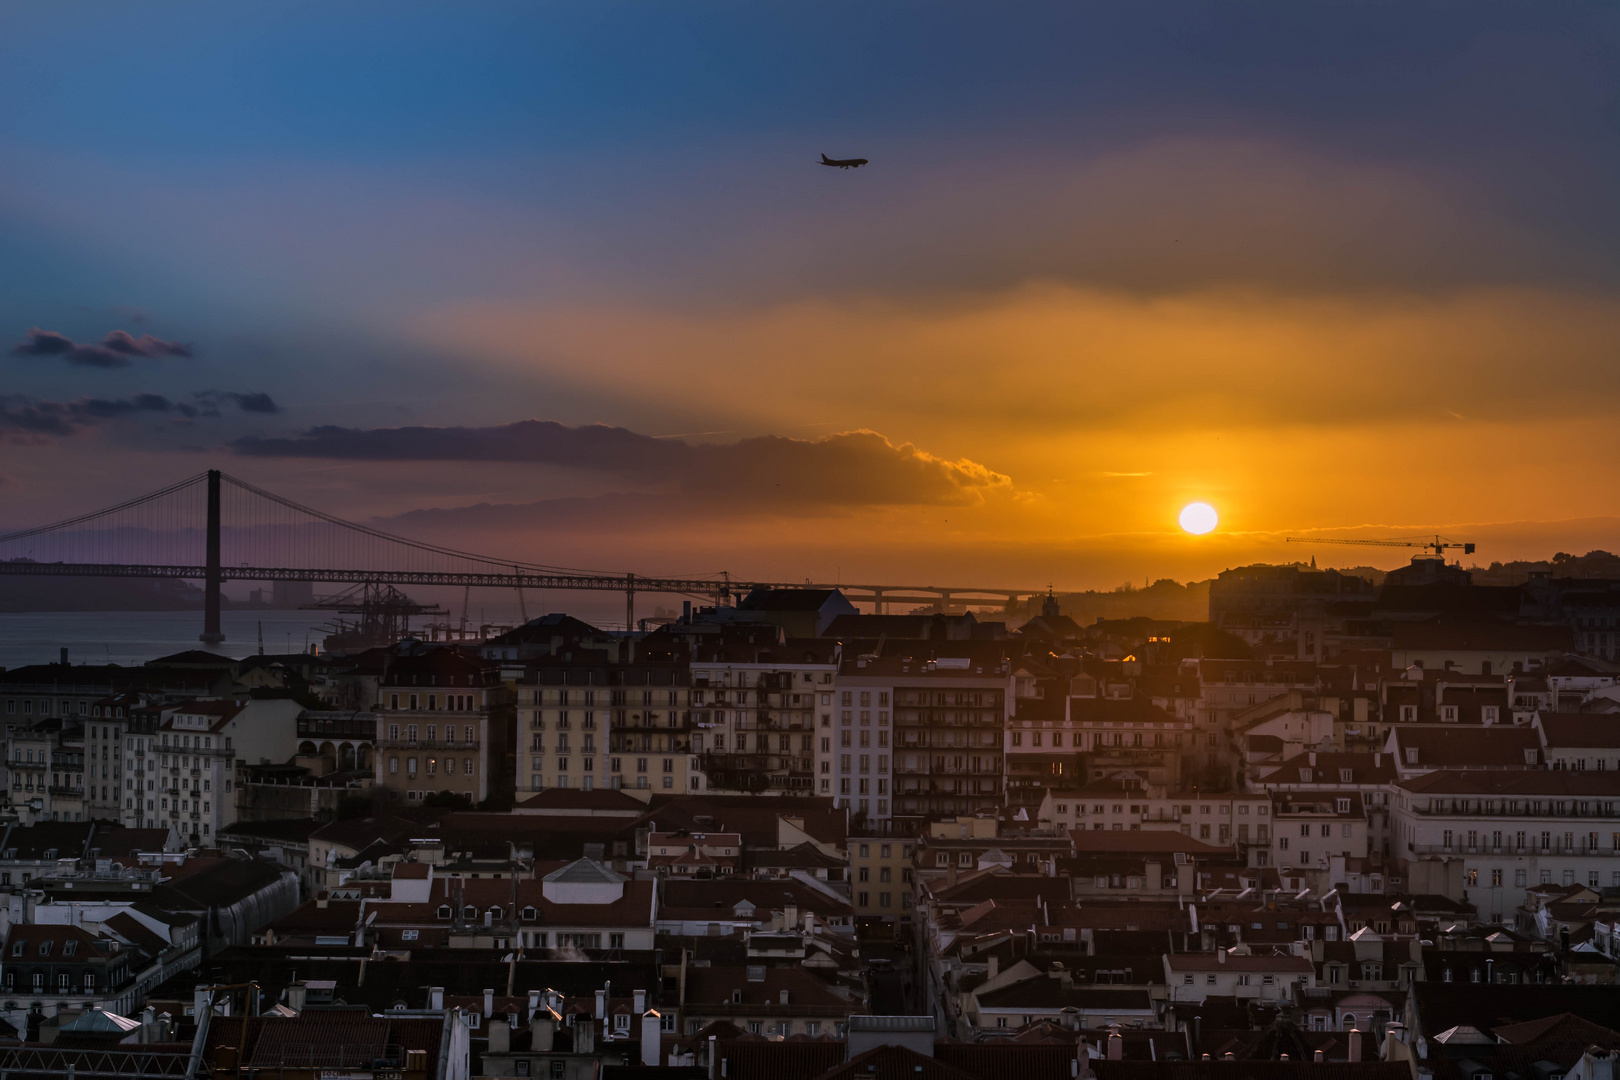 Lissabon Sunset